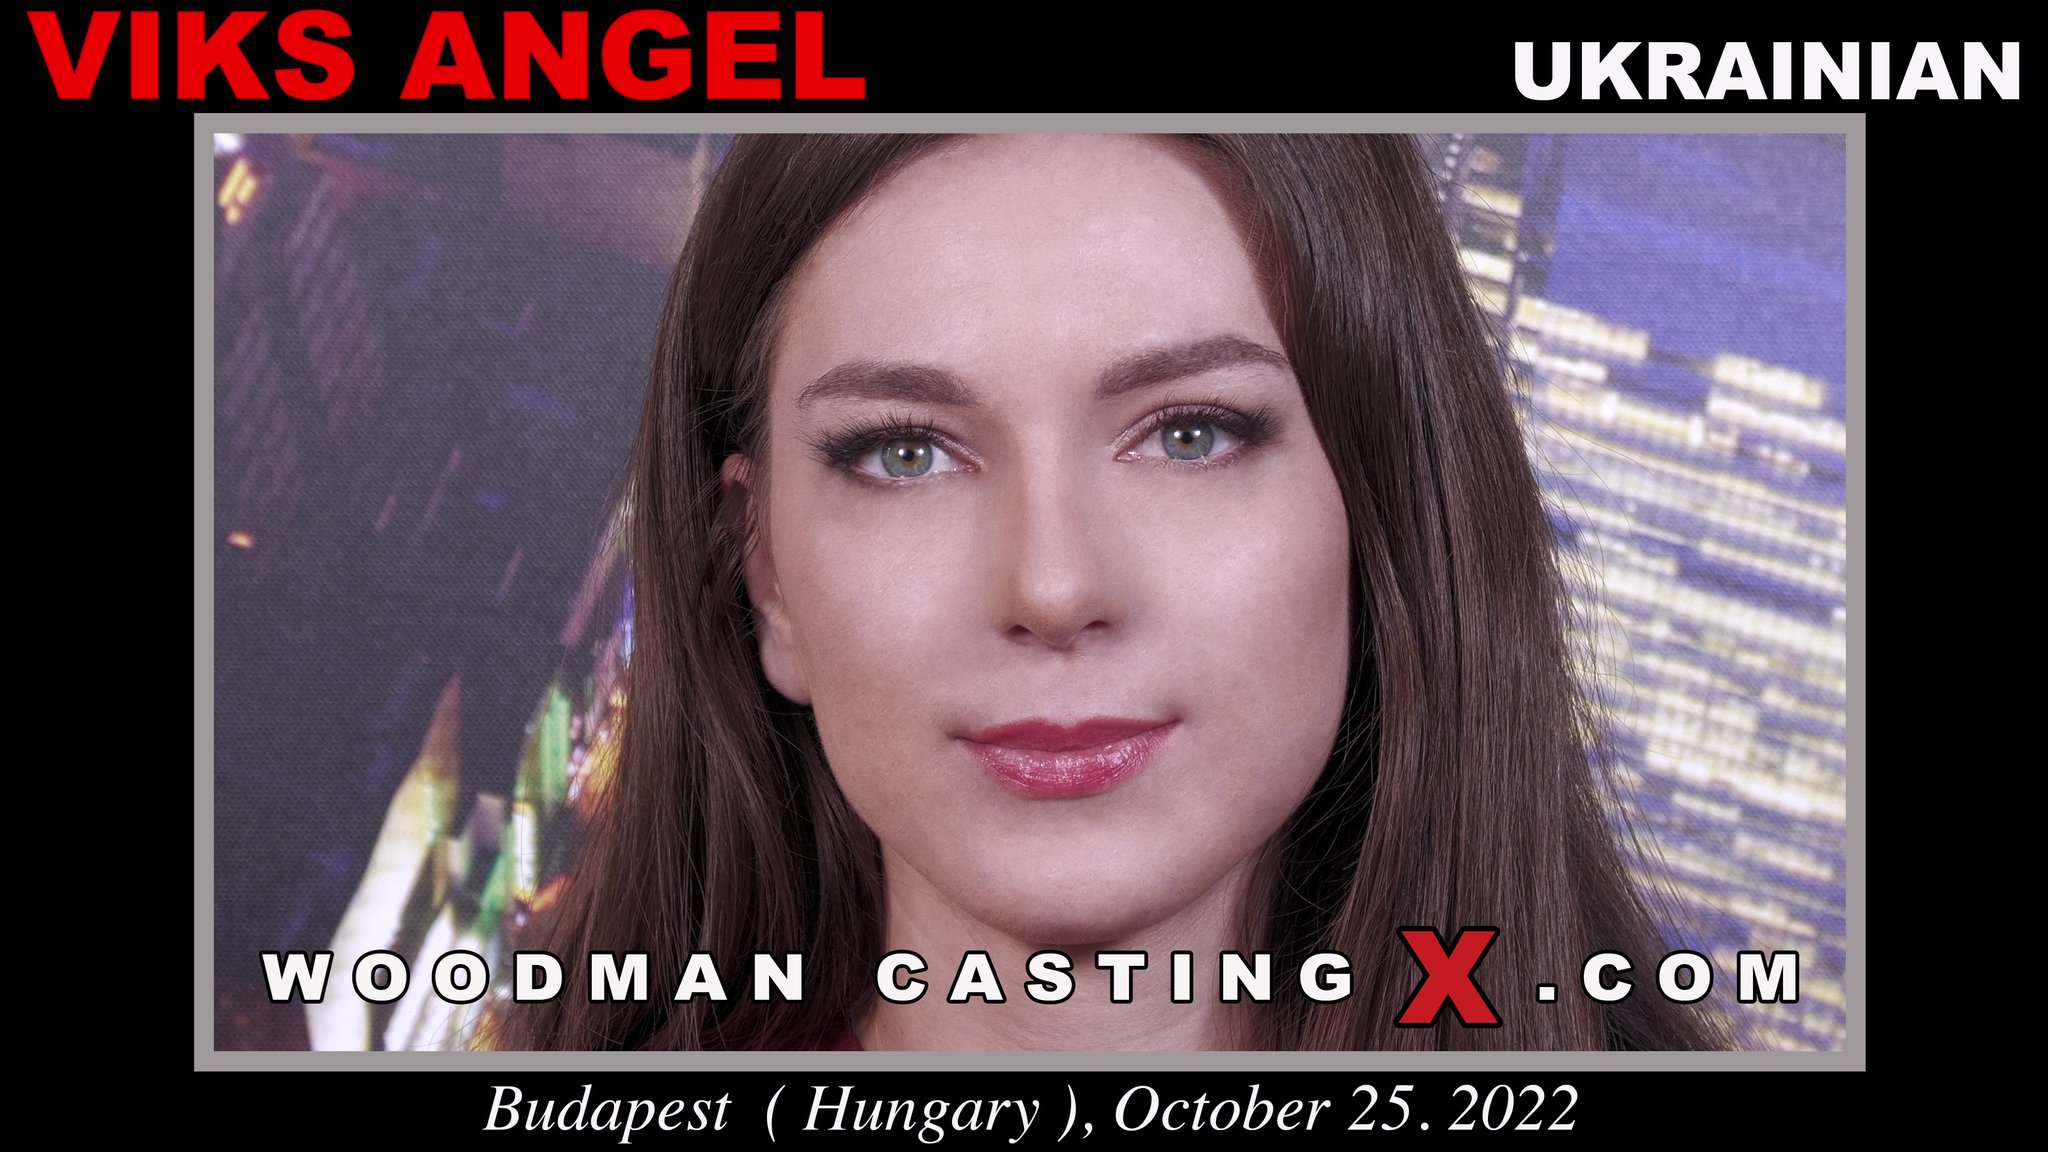 Tw Pornstars Woodman Casting X Twitter [new Video] Viks Angel 2 20 Pm 31 Oct 2022